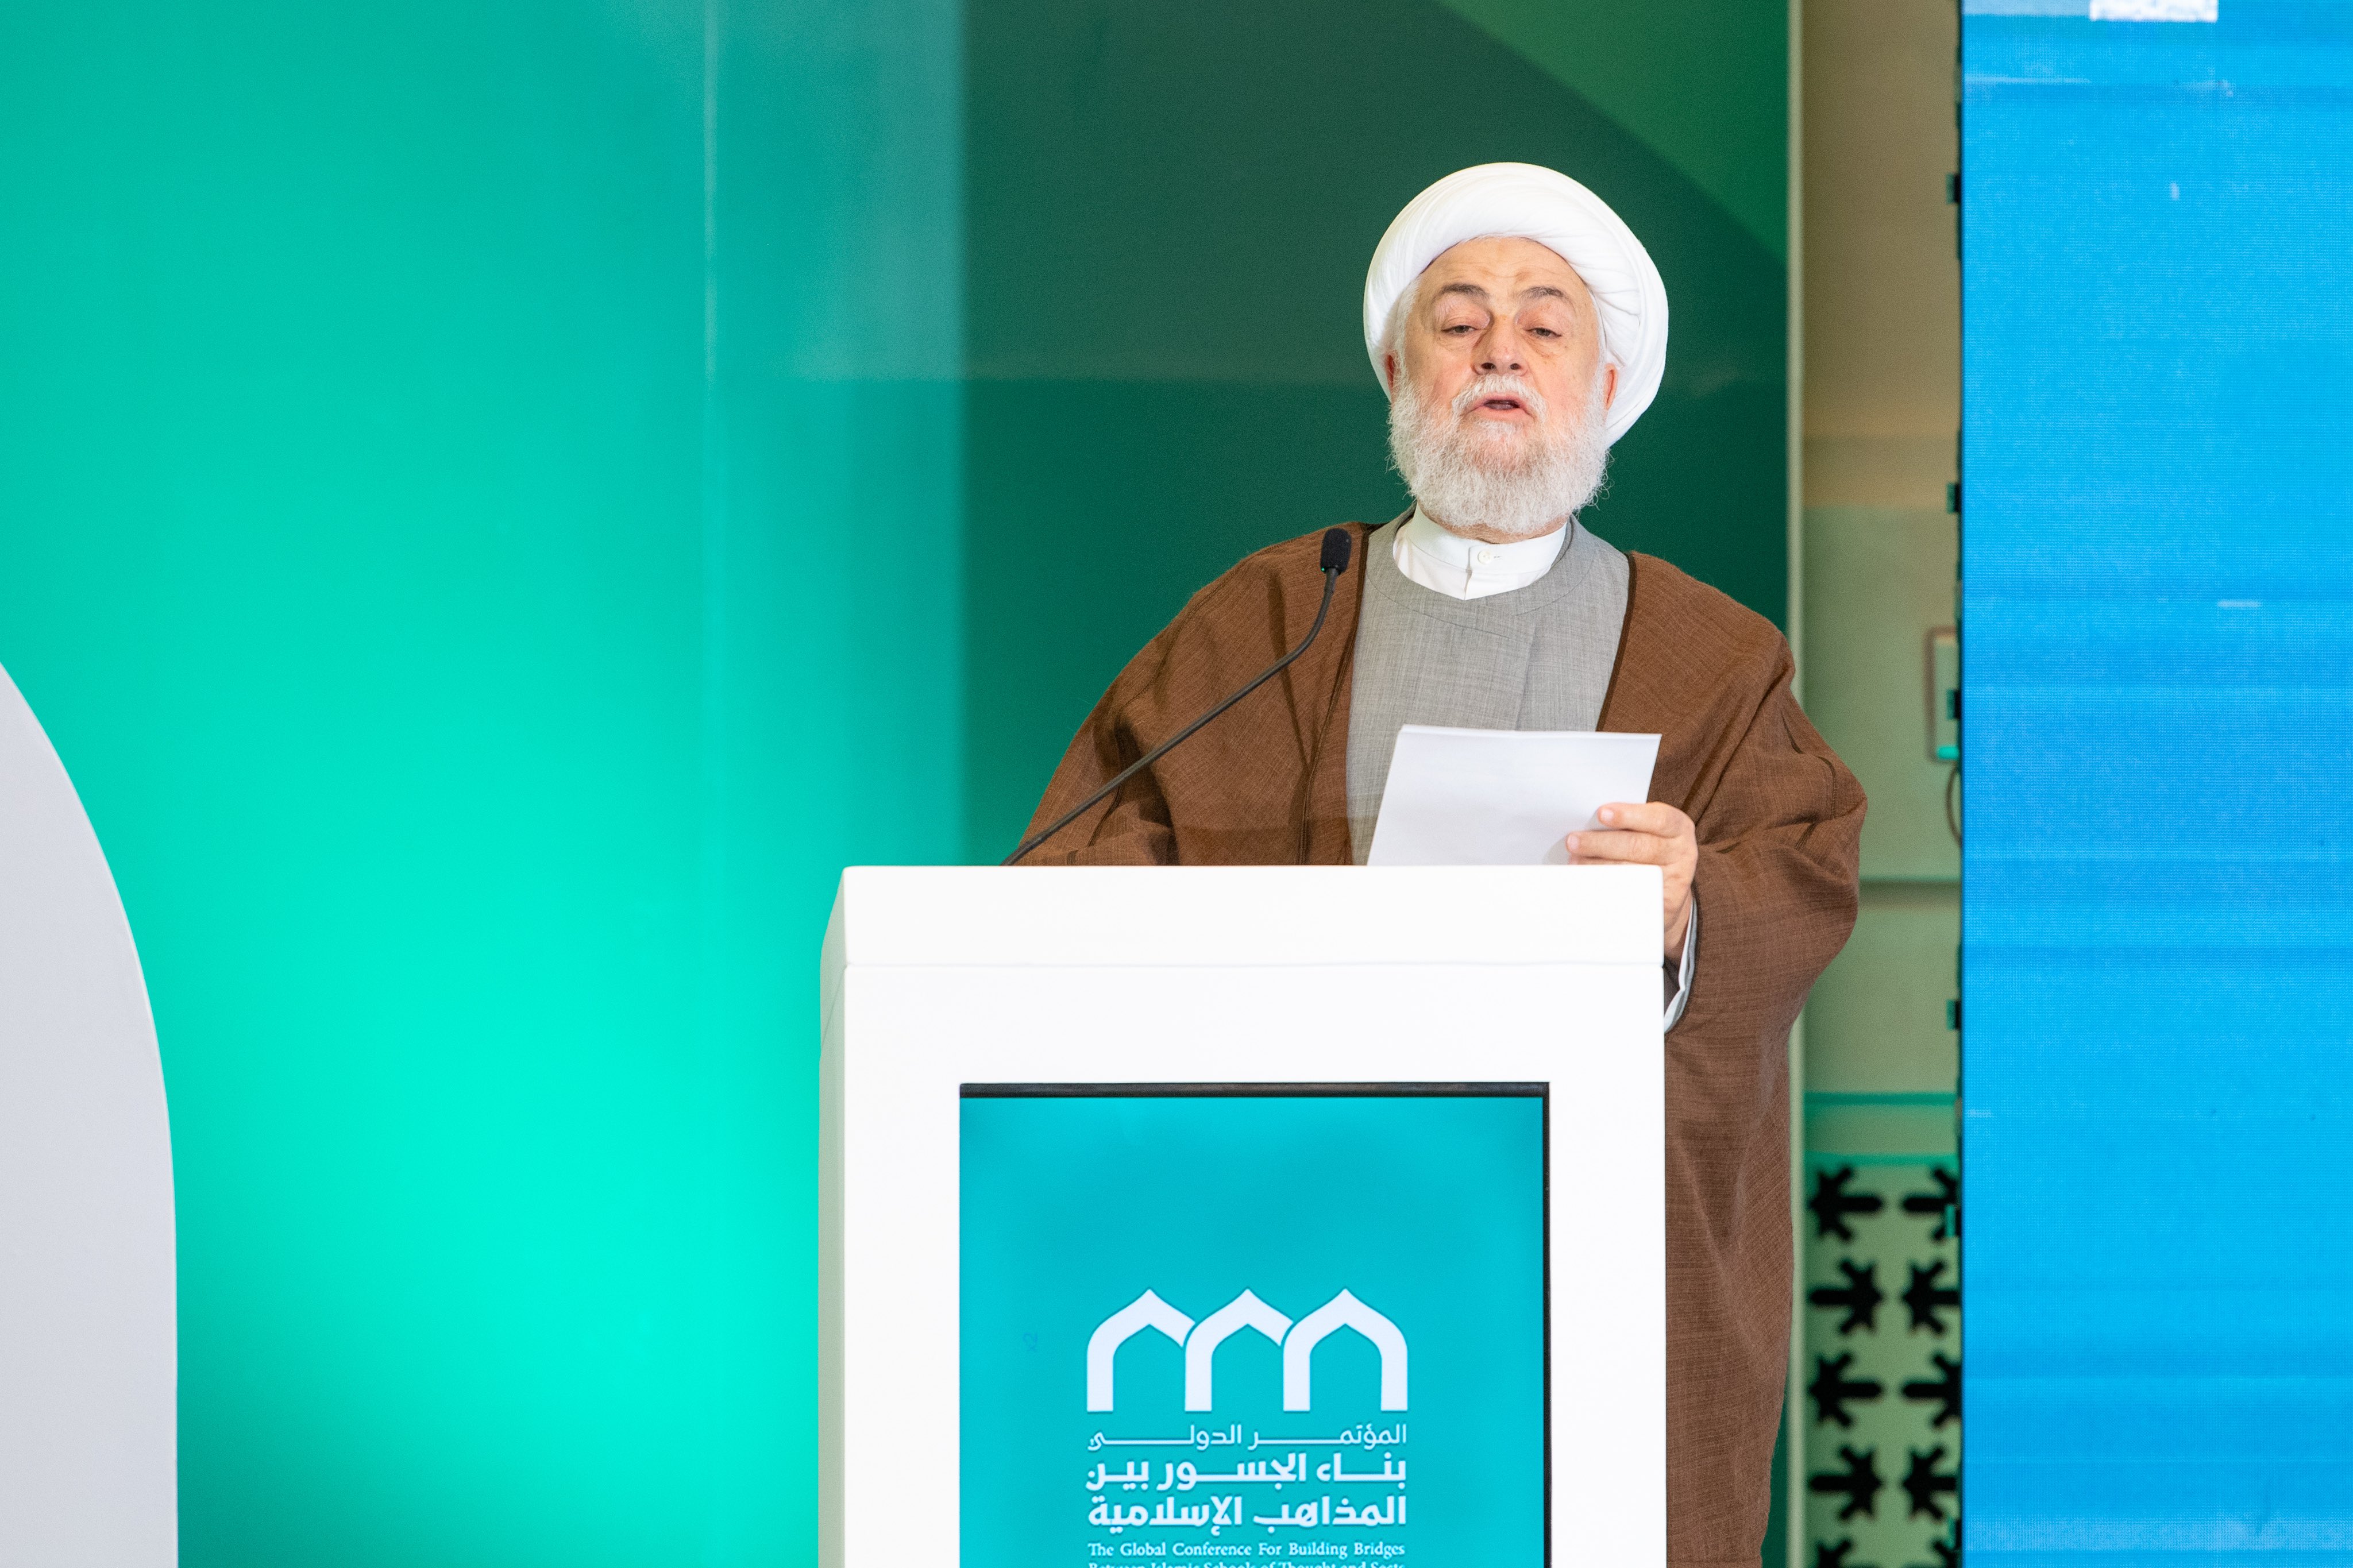 فضيلةُ مفتي صيدا بالجمهورية اللبنانية، الشيخ محمد عسيران، في كلمته في الجلسة الختامية لمؤتمر: "بناء الجسور بين المذاهب الإسلامية"